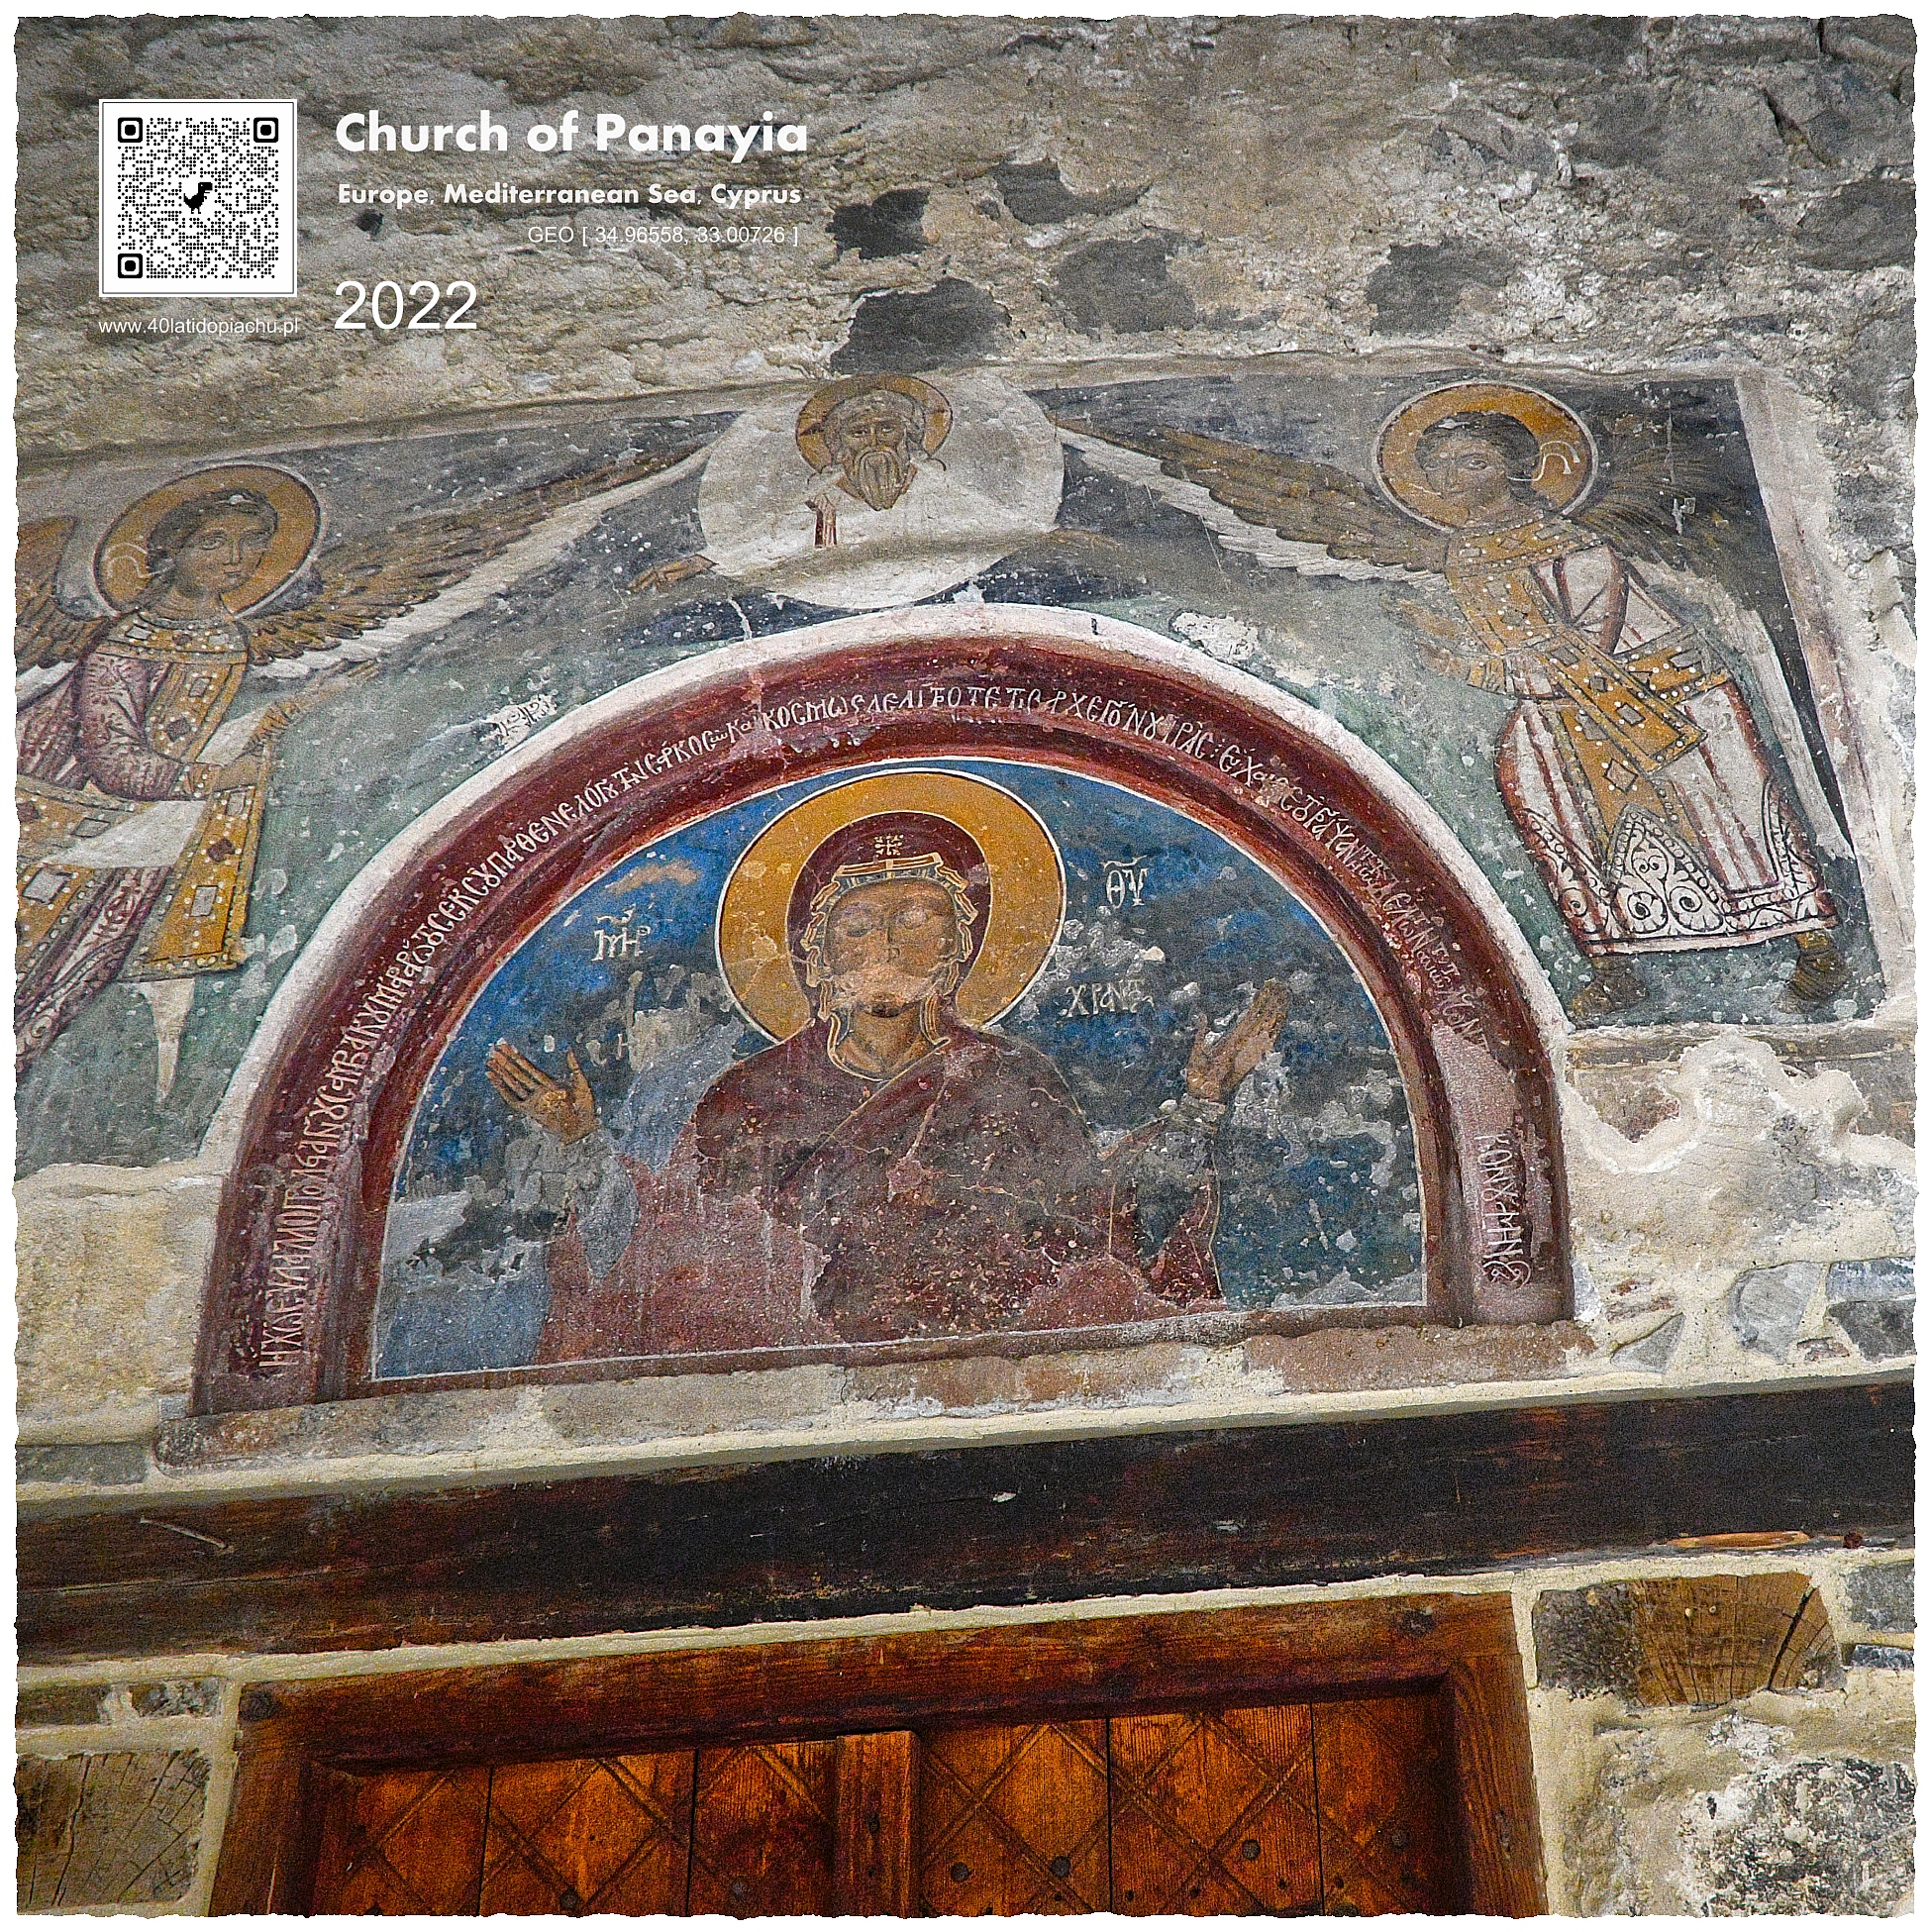 Cypr i kościoły bizantyjskie UNESCO